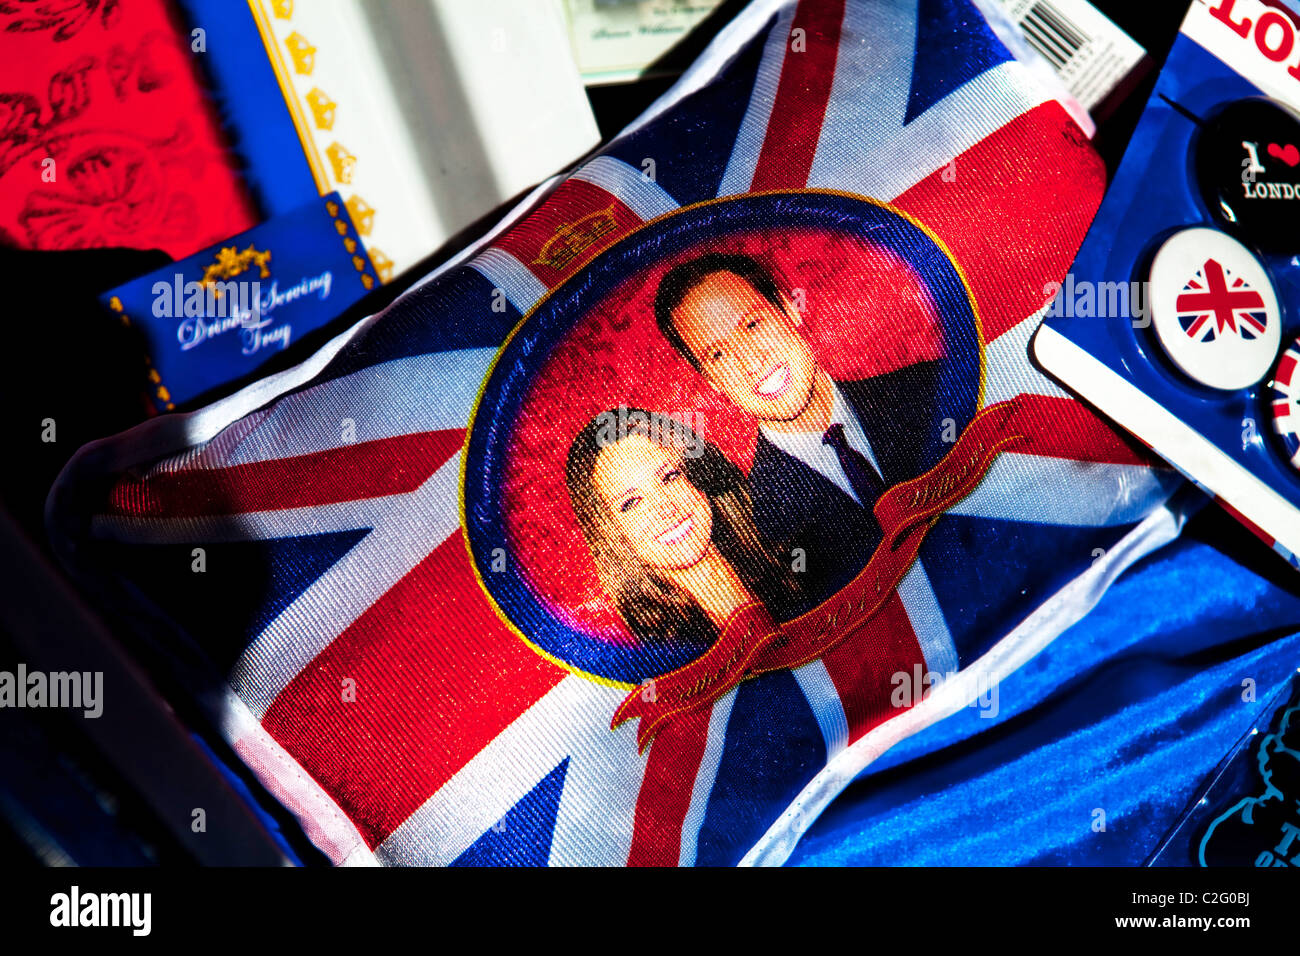 Un mariage royal coussin dans un magasin de souvenirs Banque D'Images